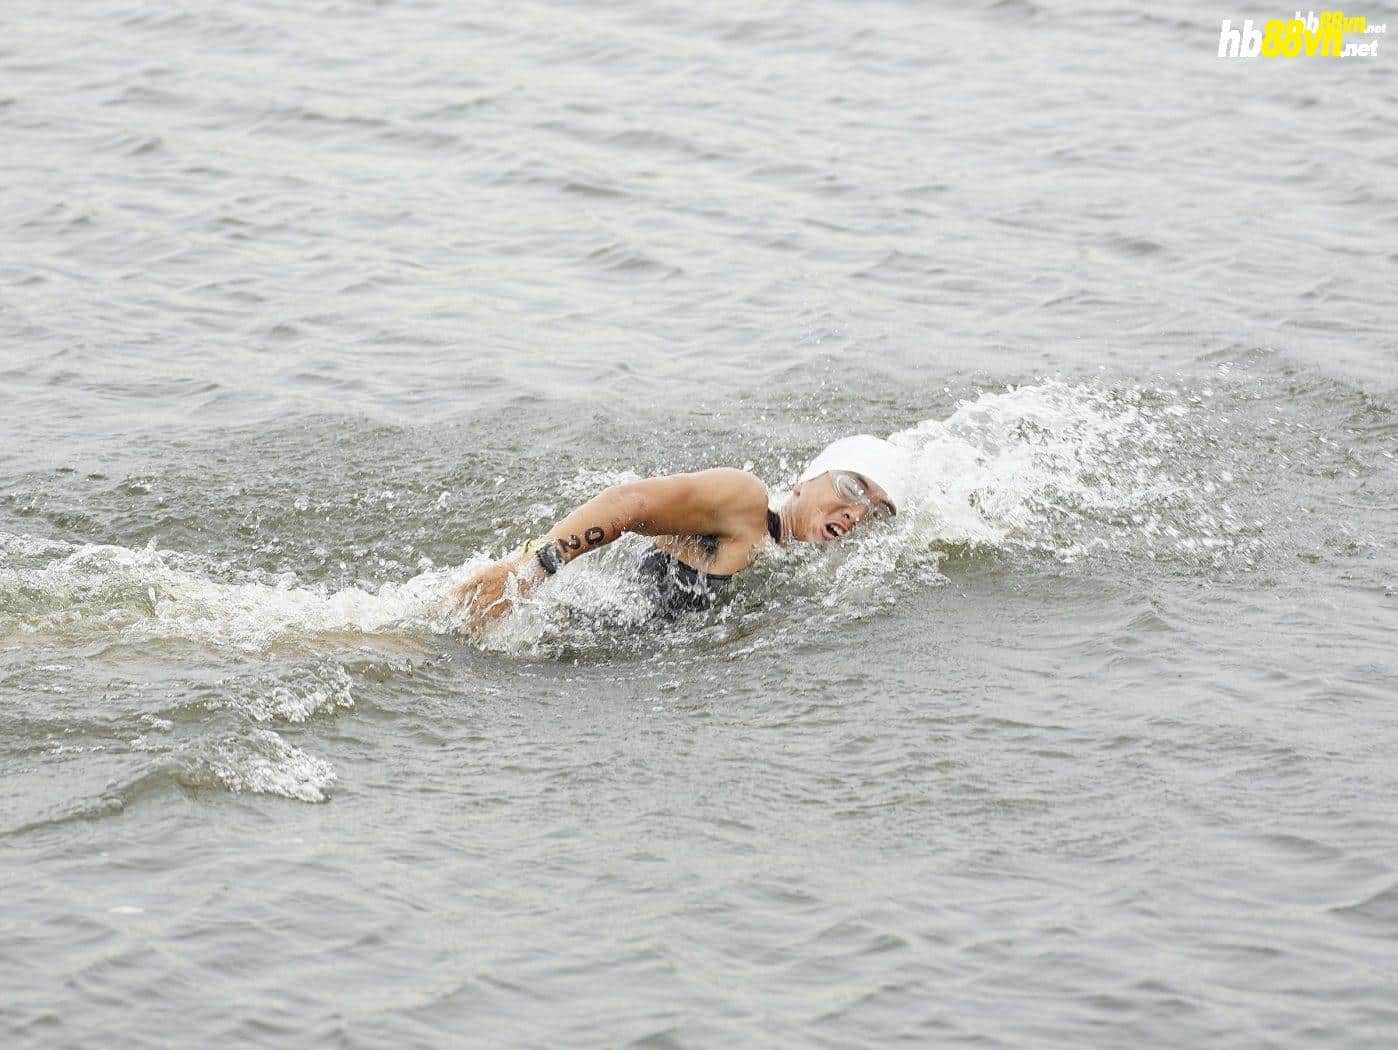 Lâm Quang Nhật thi đấu trên biển tại một giải triathlon. Ảnh: Lâm Quang Nhật